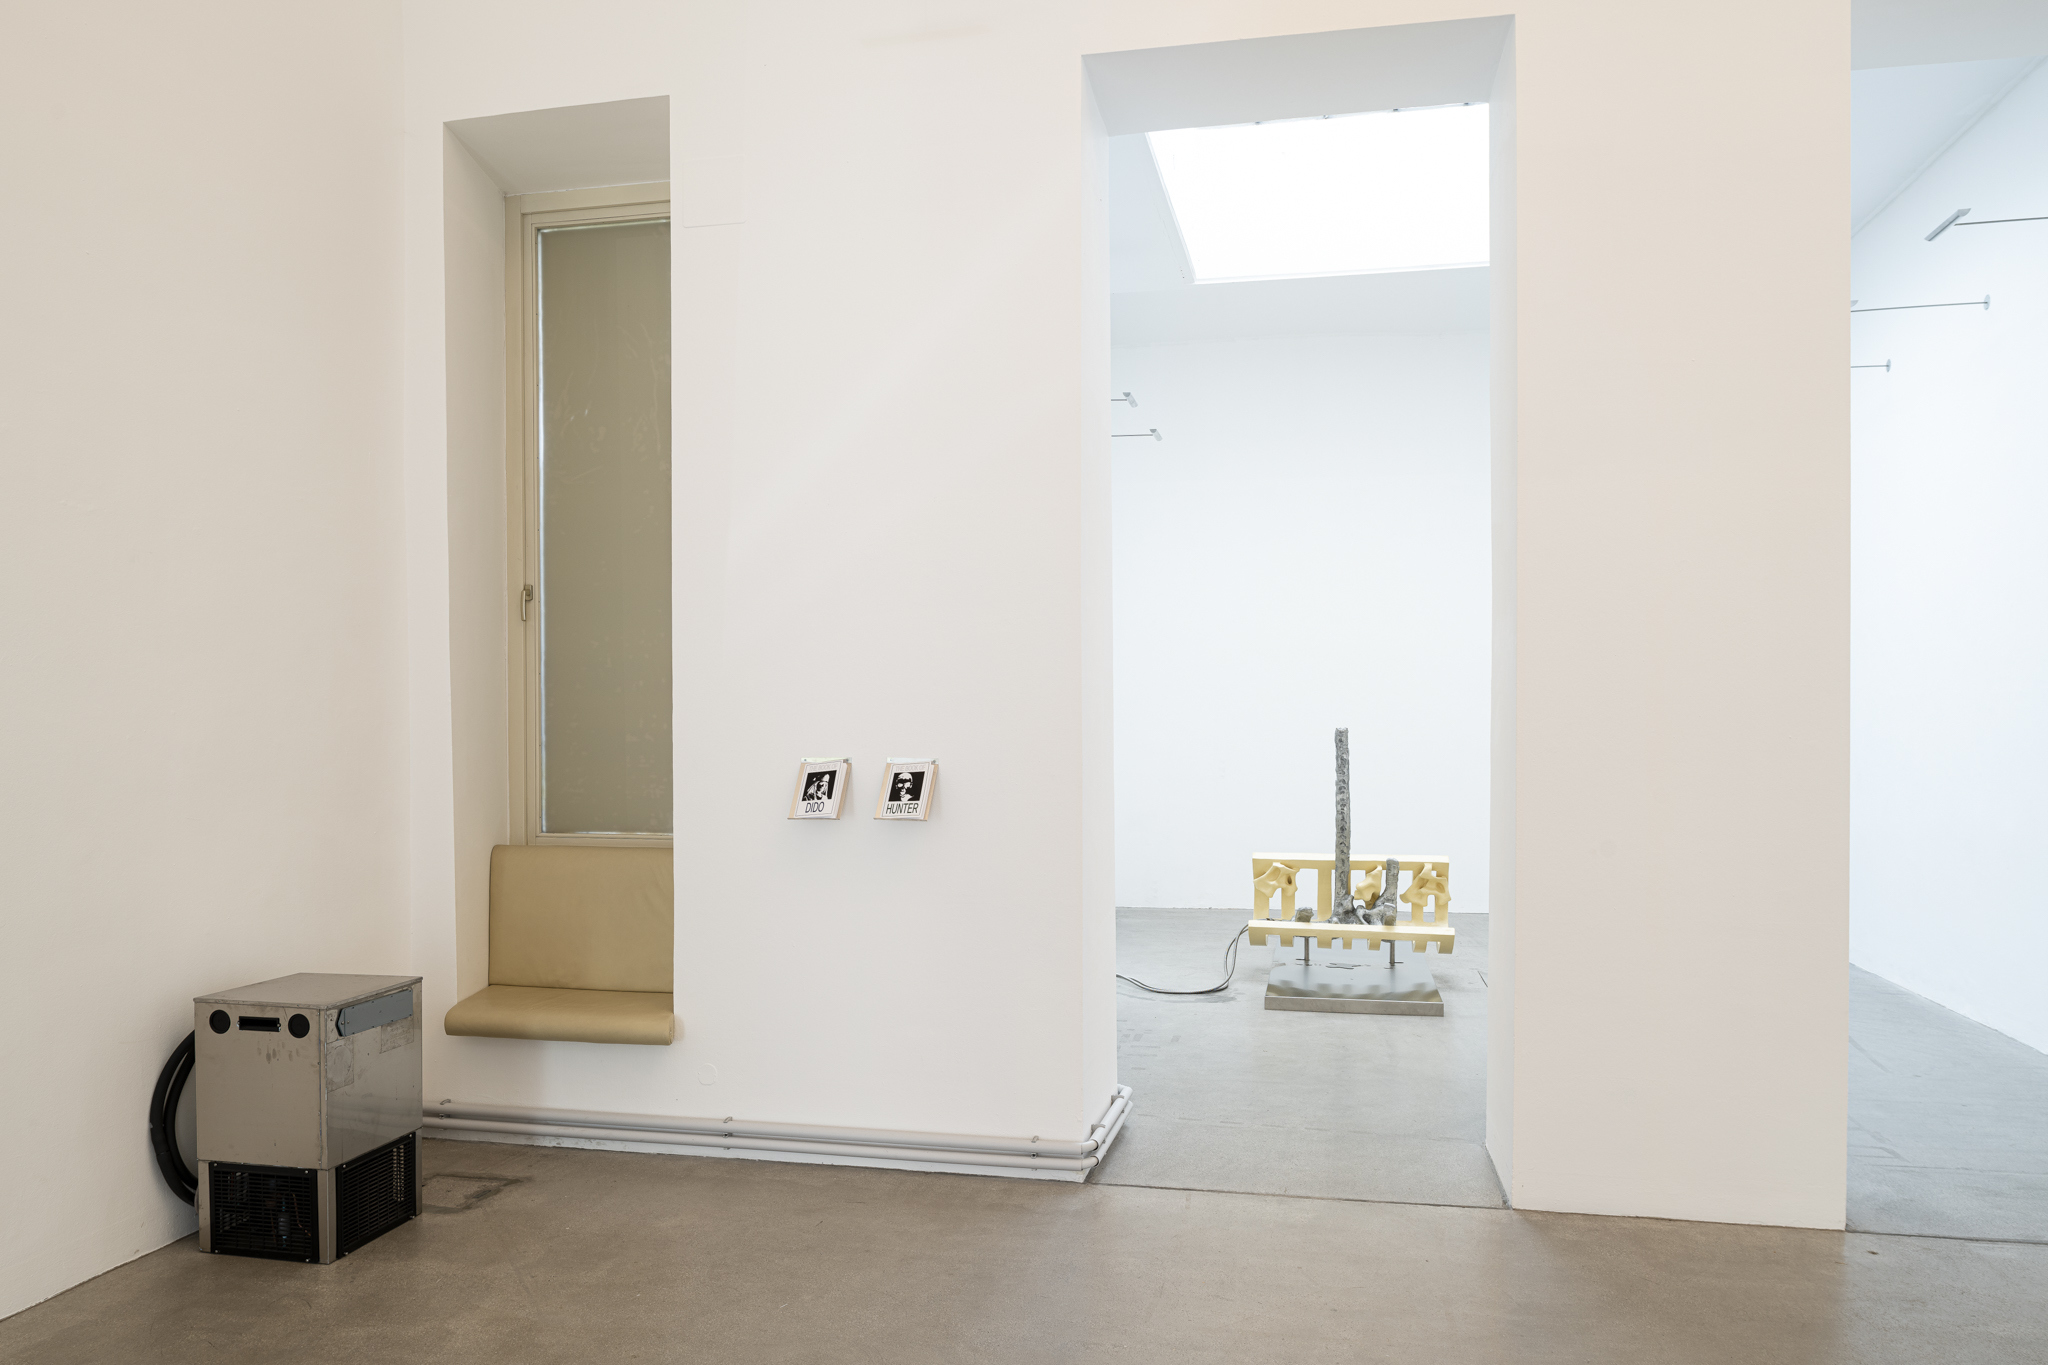 Installation view, SPECULATIVE SPECULUM, Galerie Raum mit Licht, Vienna, 2023